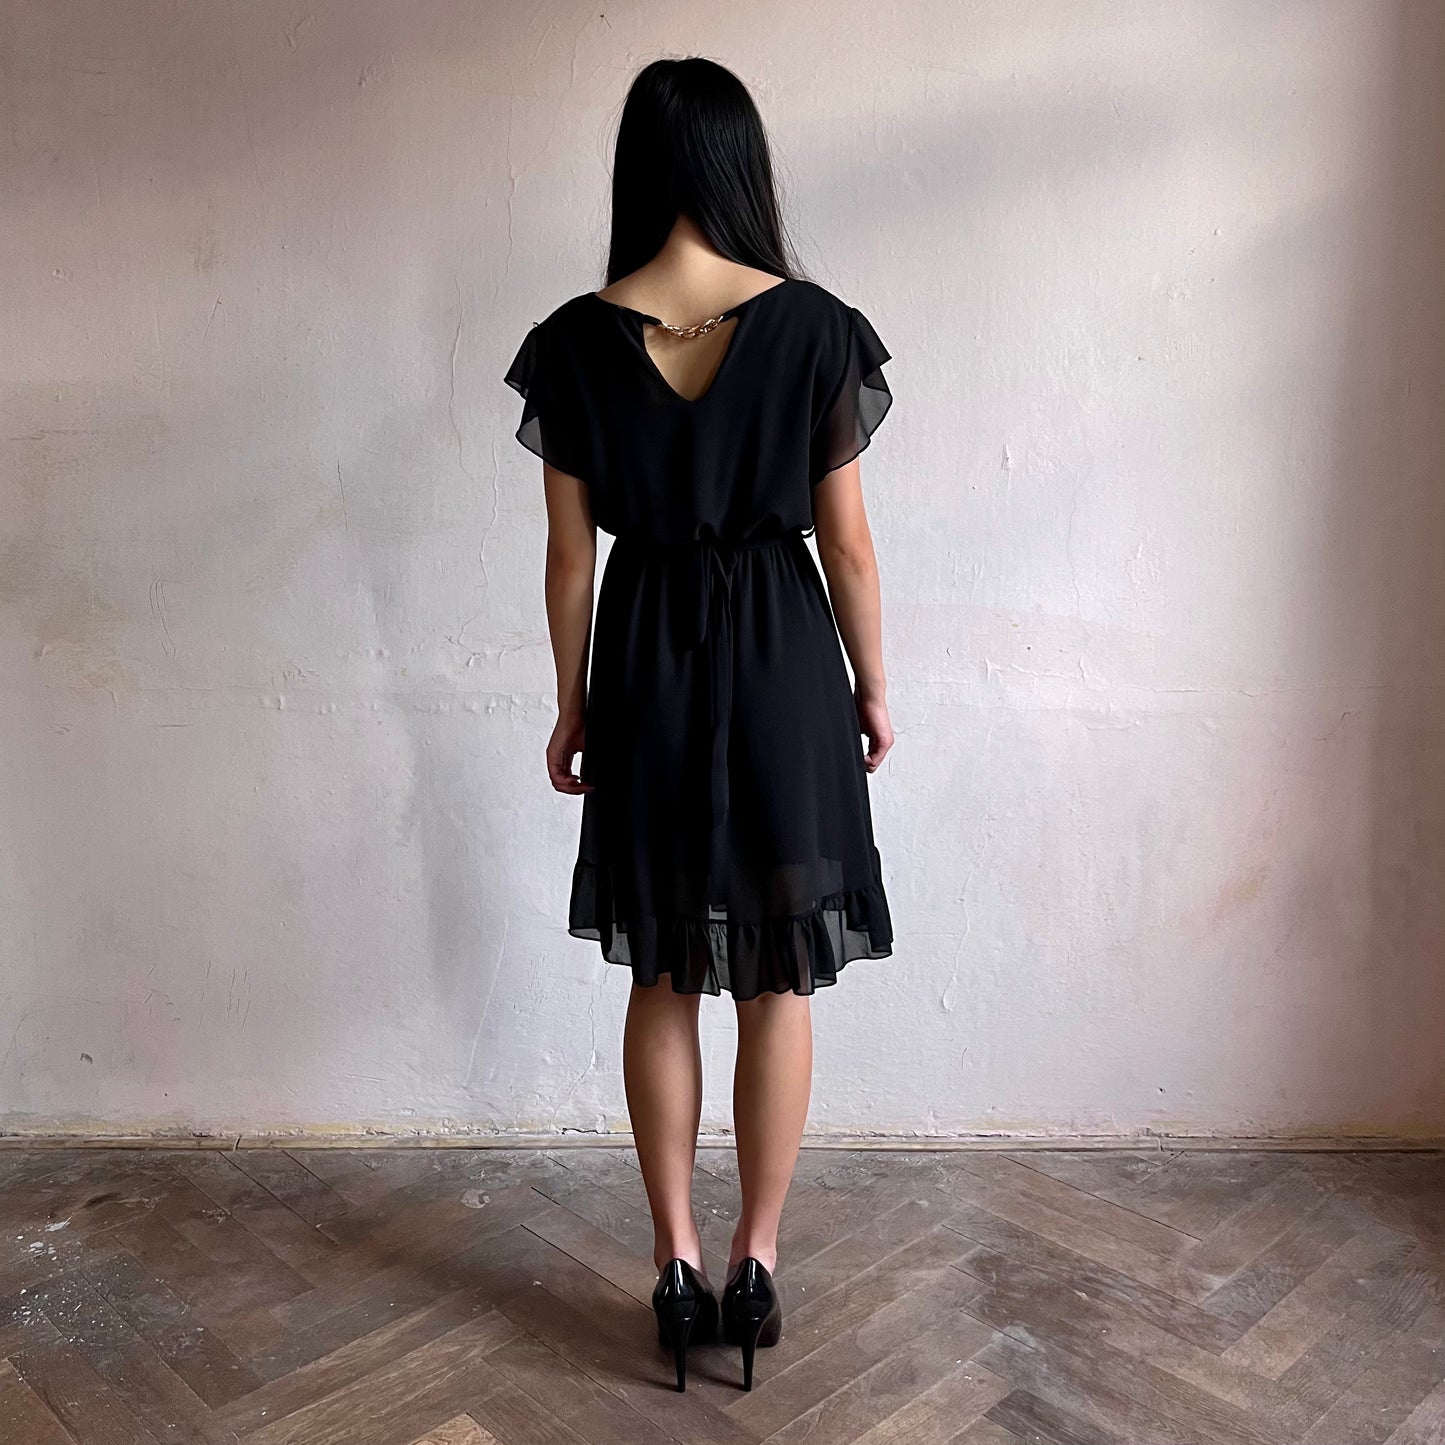 Modelka asijského původu pózující zezadu oblečená ve krátkých černých společenských šatech s volány